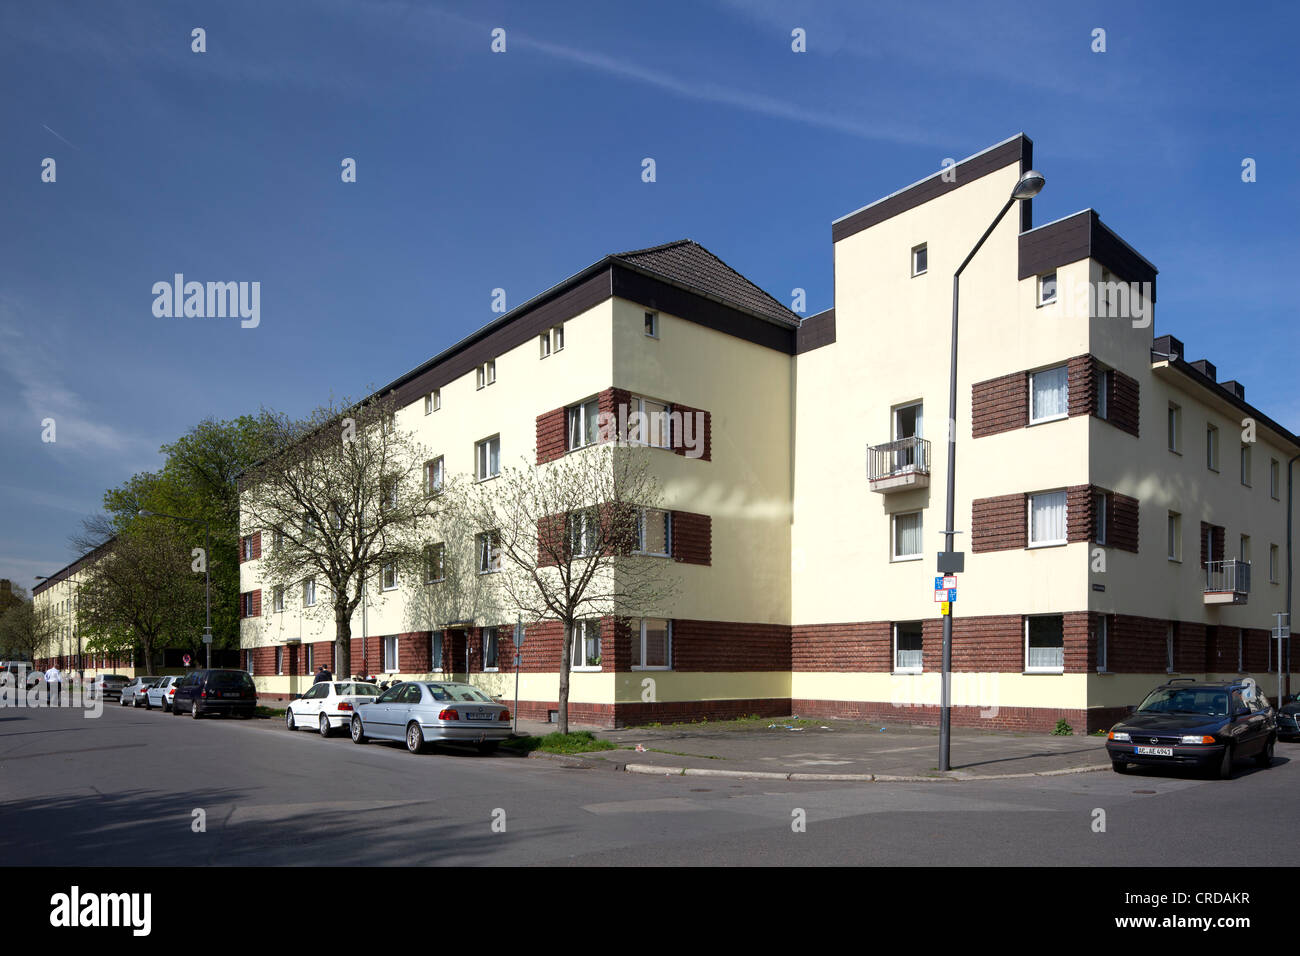 Talstrasse urbanización, Aquisgrán, Renania del Norte-Westfalia, Alemania, Europa, PublicGround Foto de stock